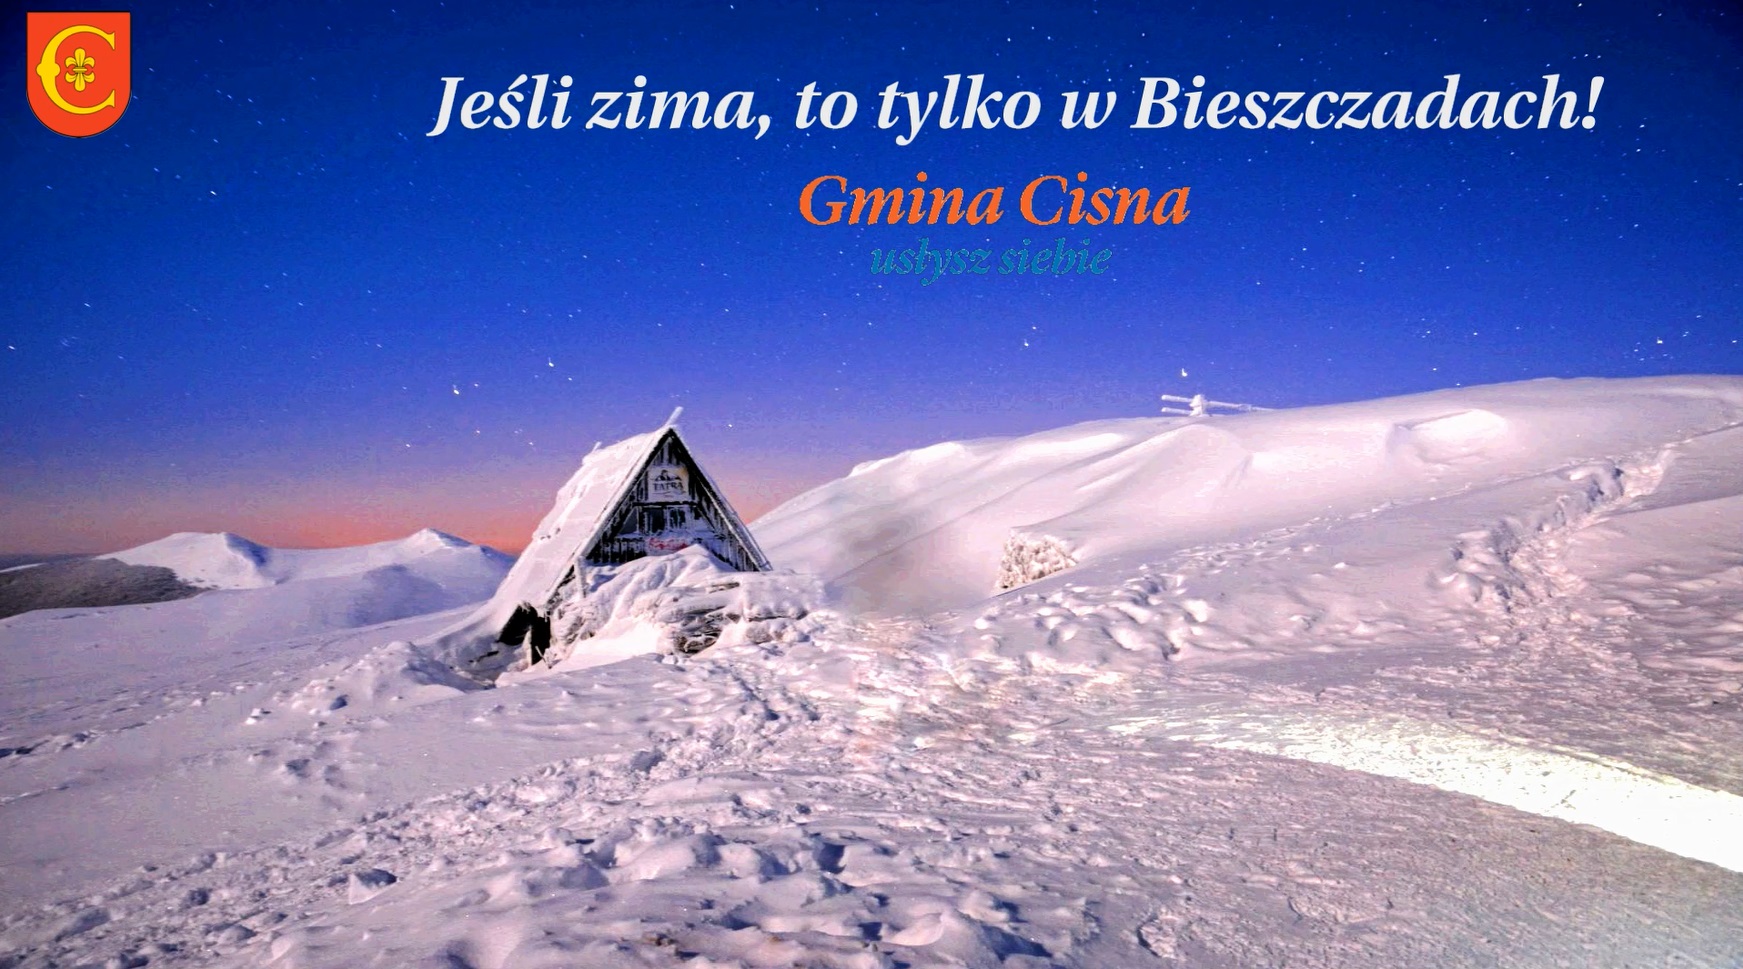 Zima w Bieszczadach Gmina Cisna